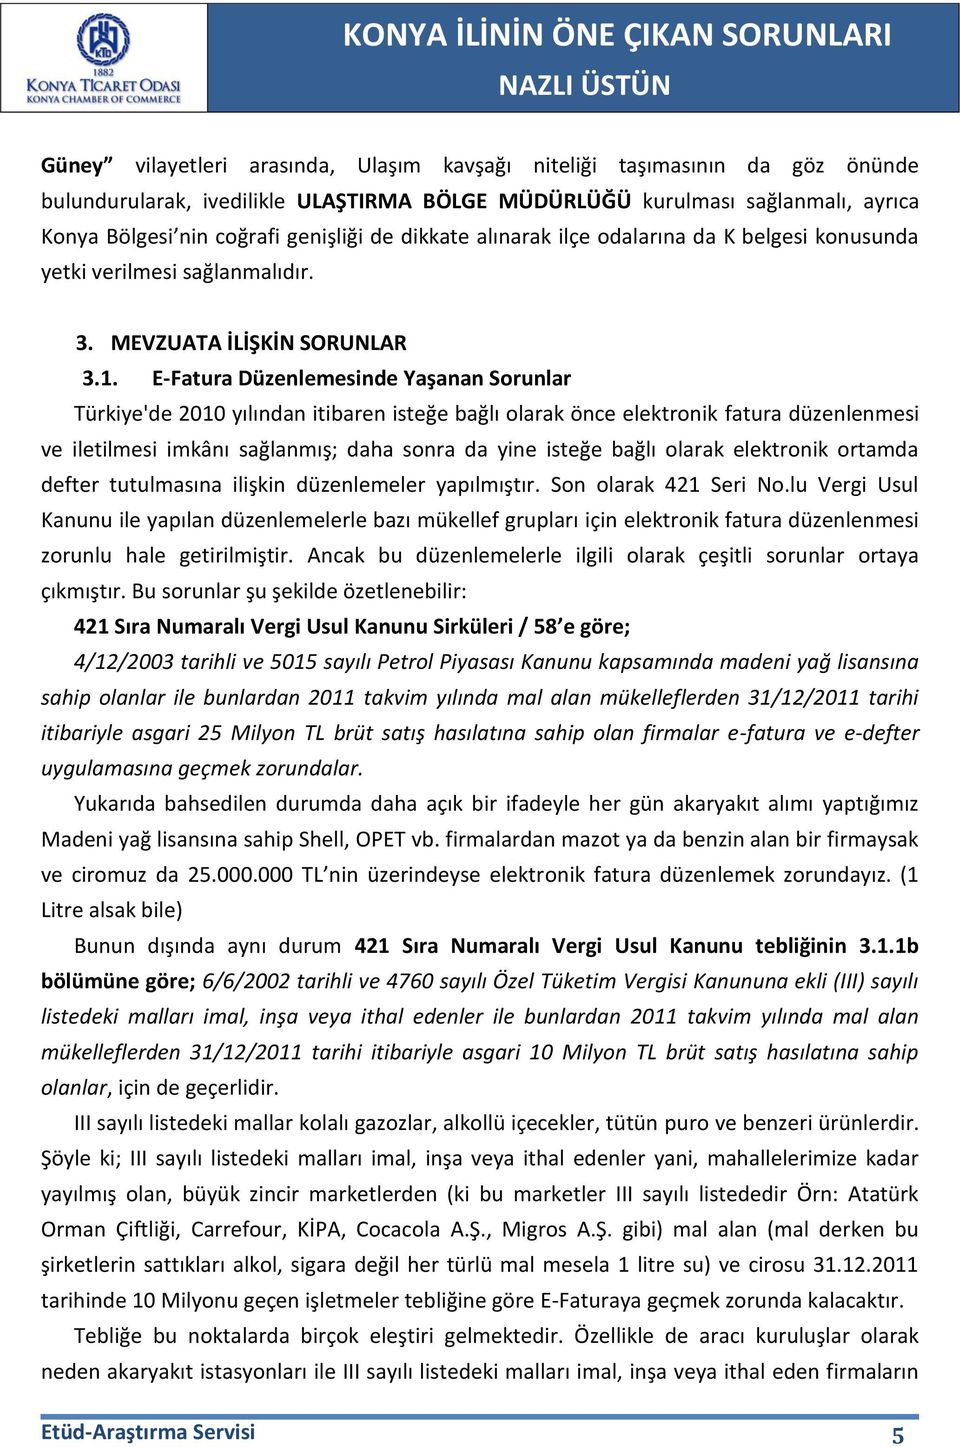 E-Fatura Düzenlemesinde Yaşanan Sorunlar Türkiye'de 2010 yılından itibaren isteğe bağlı olarak önce elektronik fatura düzenlenmesi ve iletilmesi imkânı sağlanmış; daha sonra da yine isteğe bağlı